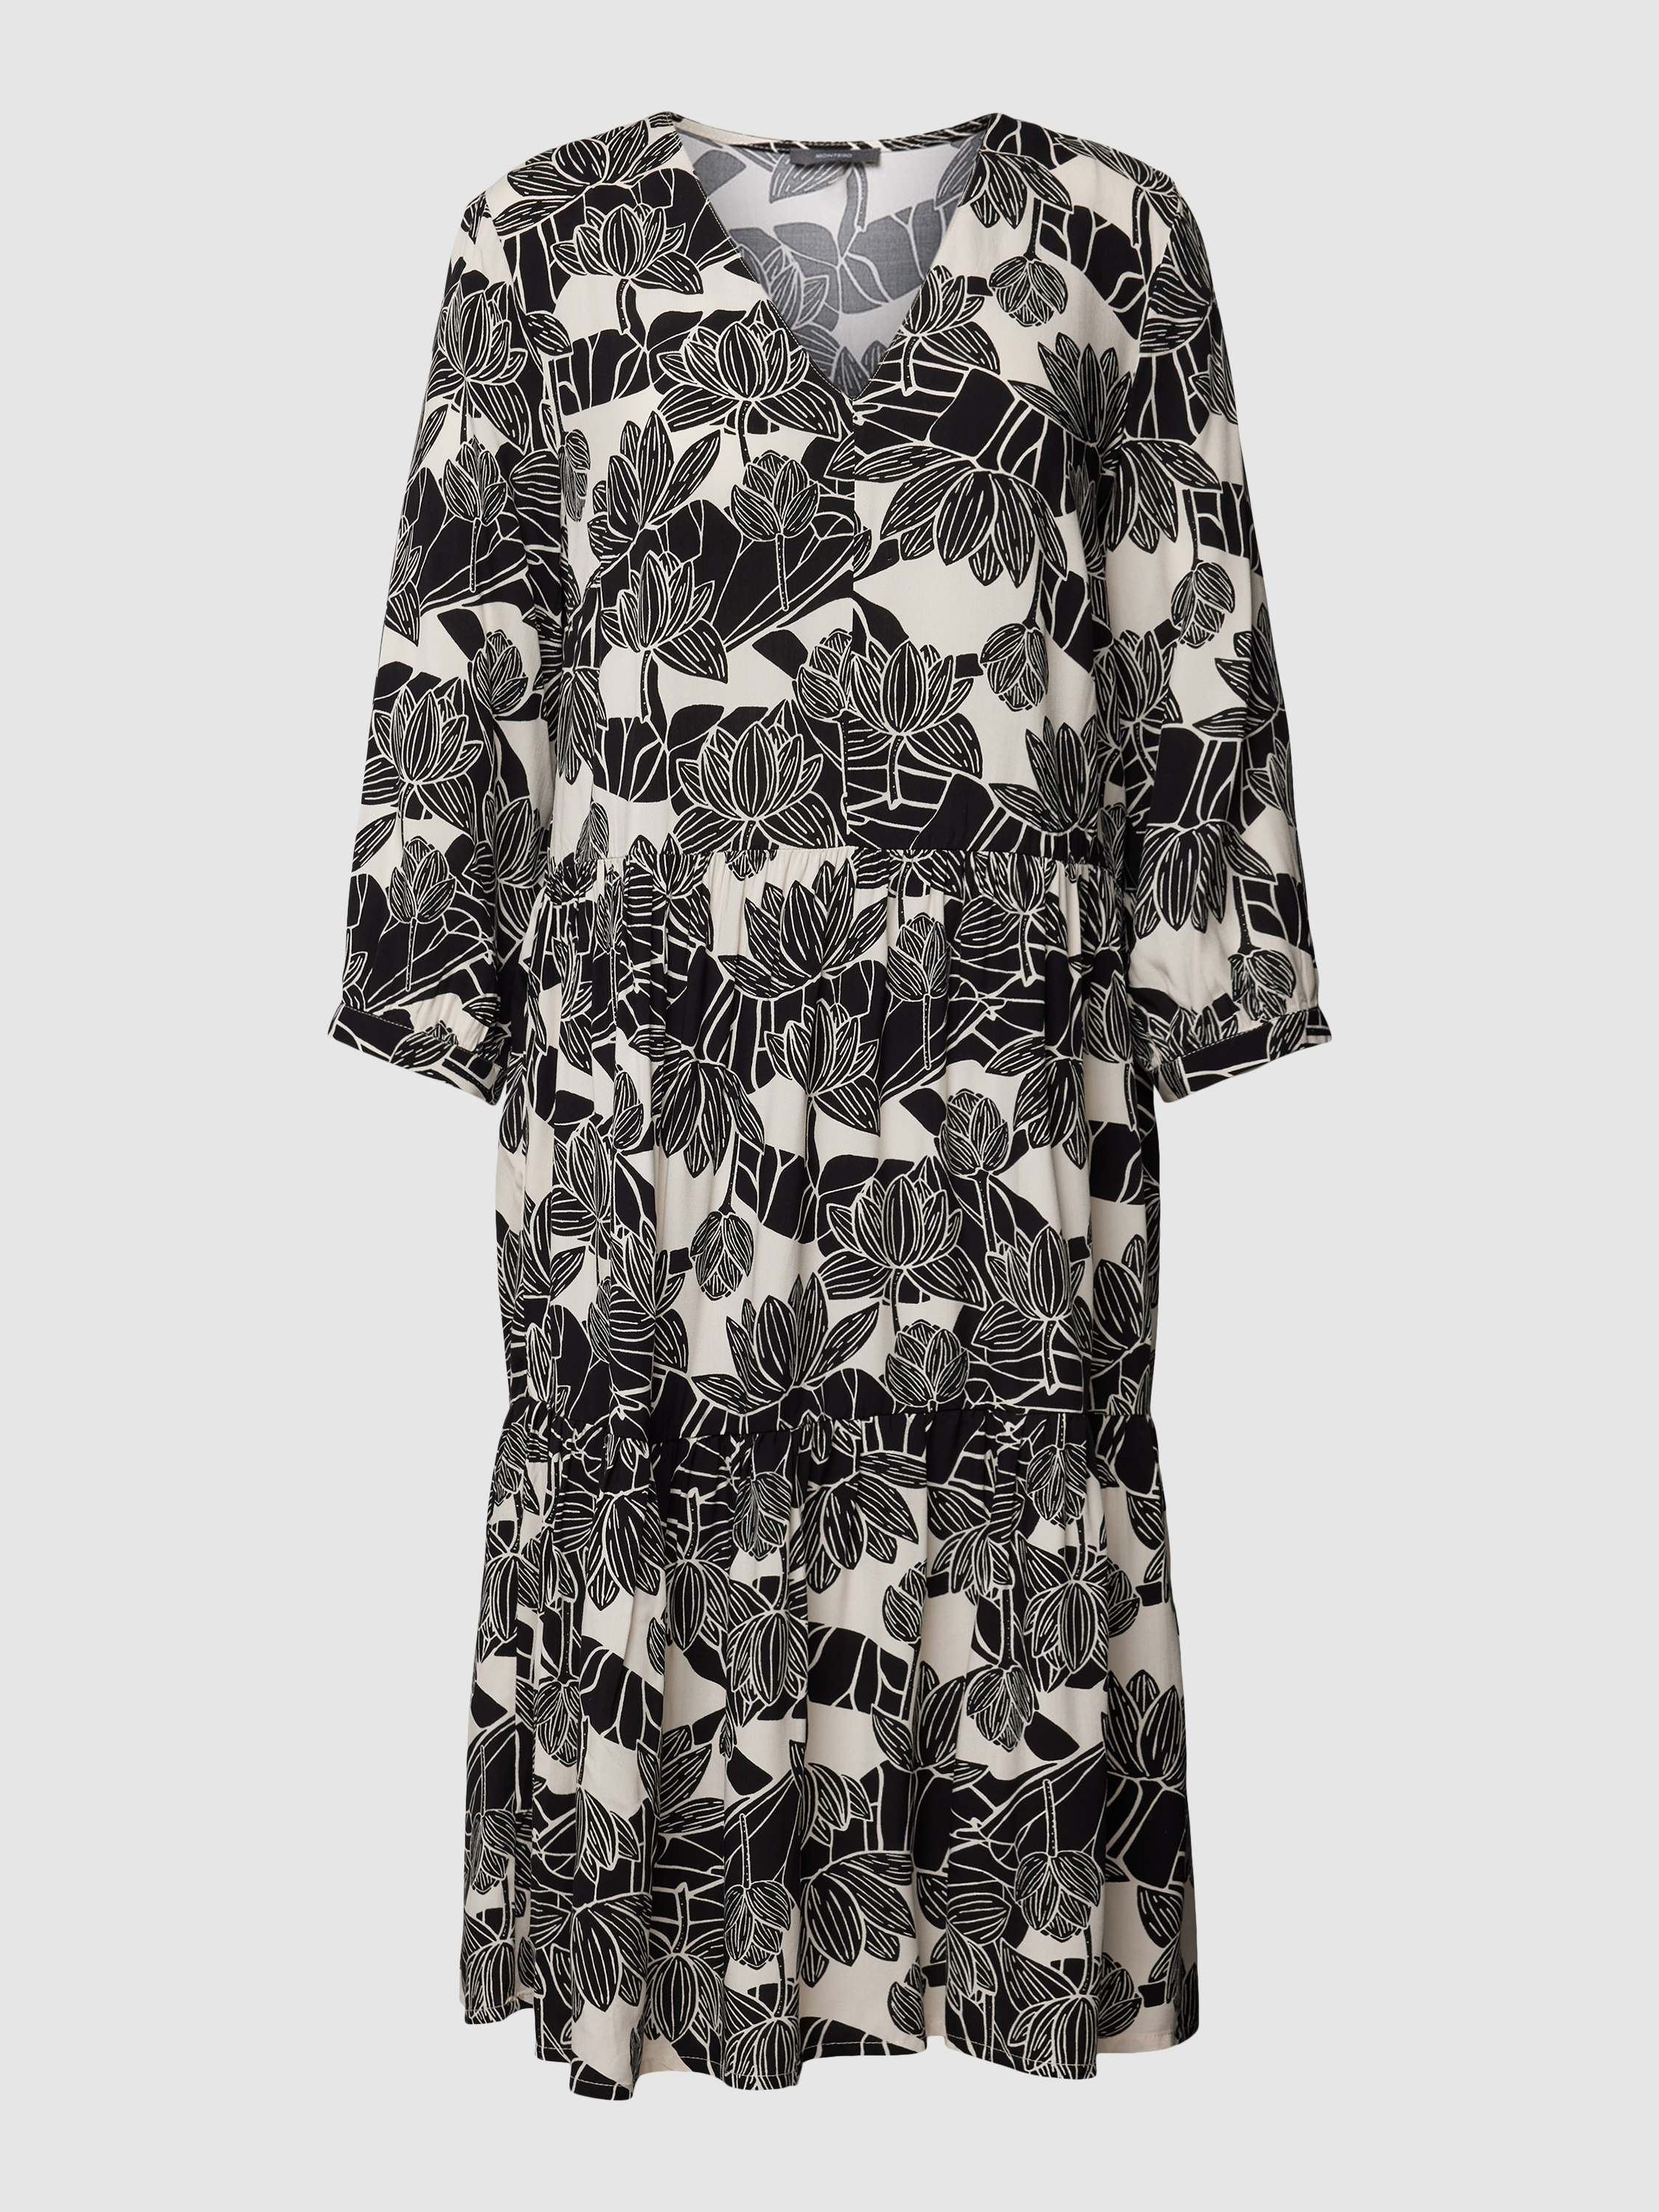 Платье женское Montego 1748764 бежевое 46 (доставка из-за рубежа)